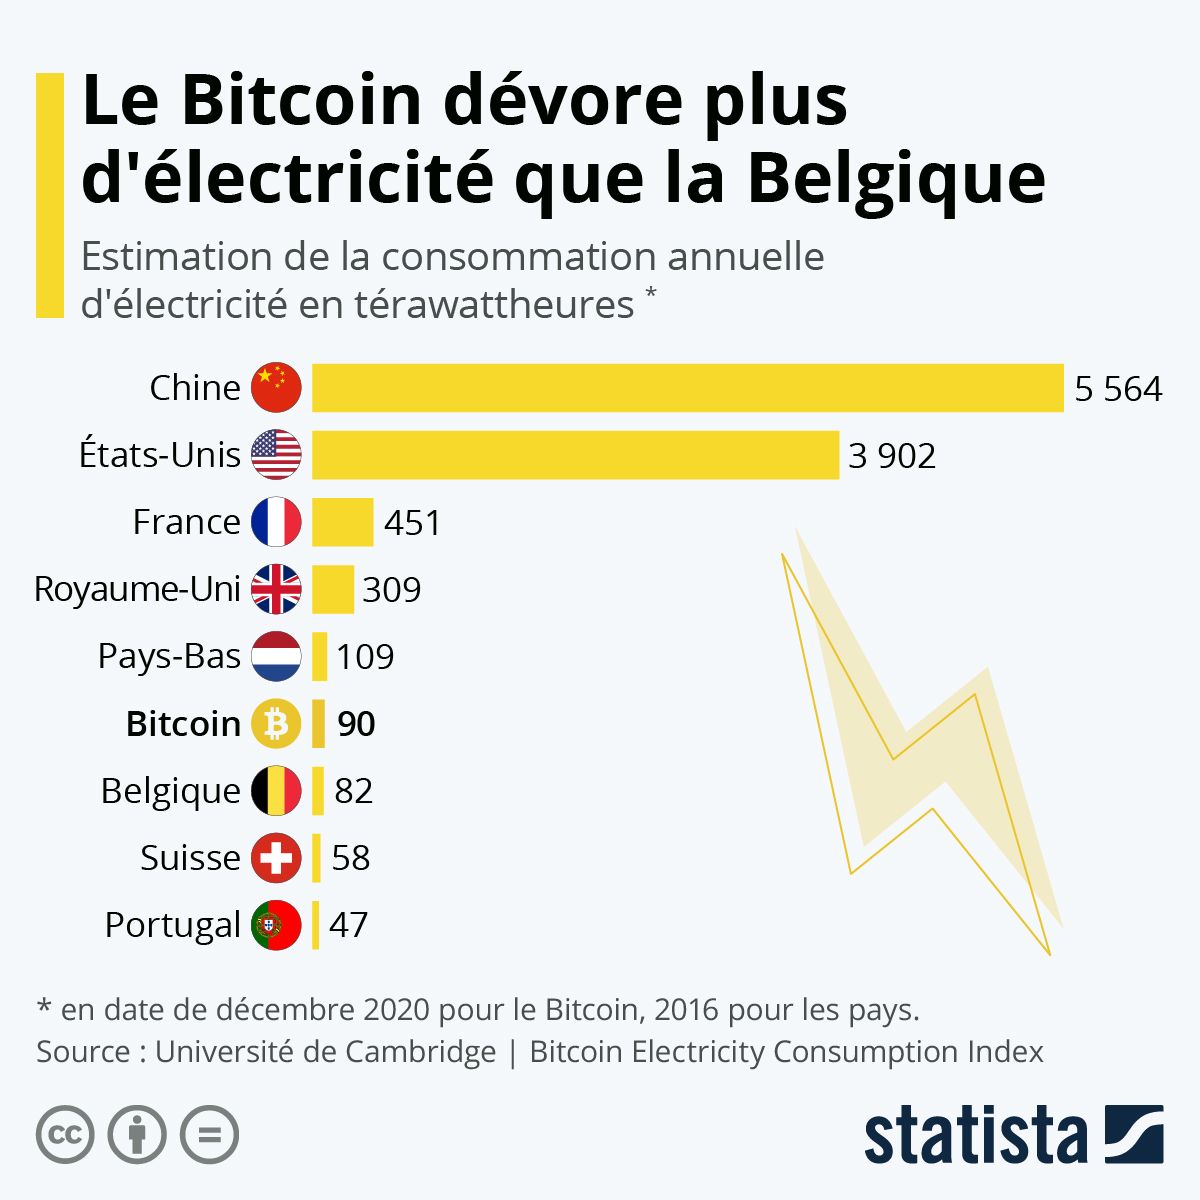 Jonathan Chan 💡📣 on Twitter: "#Infographie: Le #Bitcoin dévore plus d'électricité que la Belgique 🇧🇪. Sur les 219 pays de la planète pour lesquels la consommation énergétique est répertoriée, seuls 34 consomment